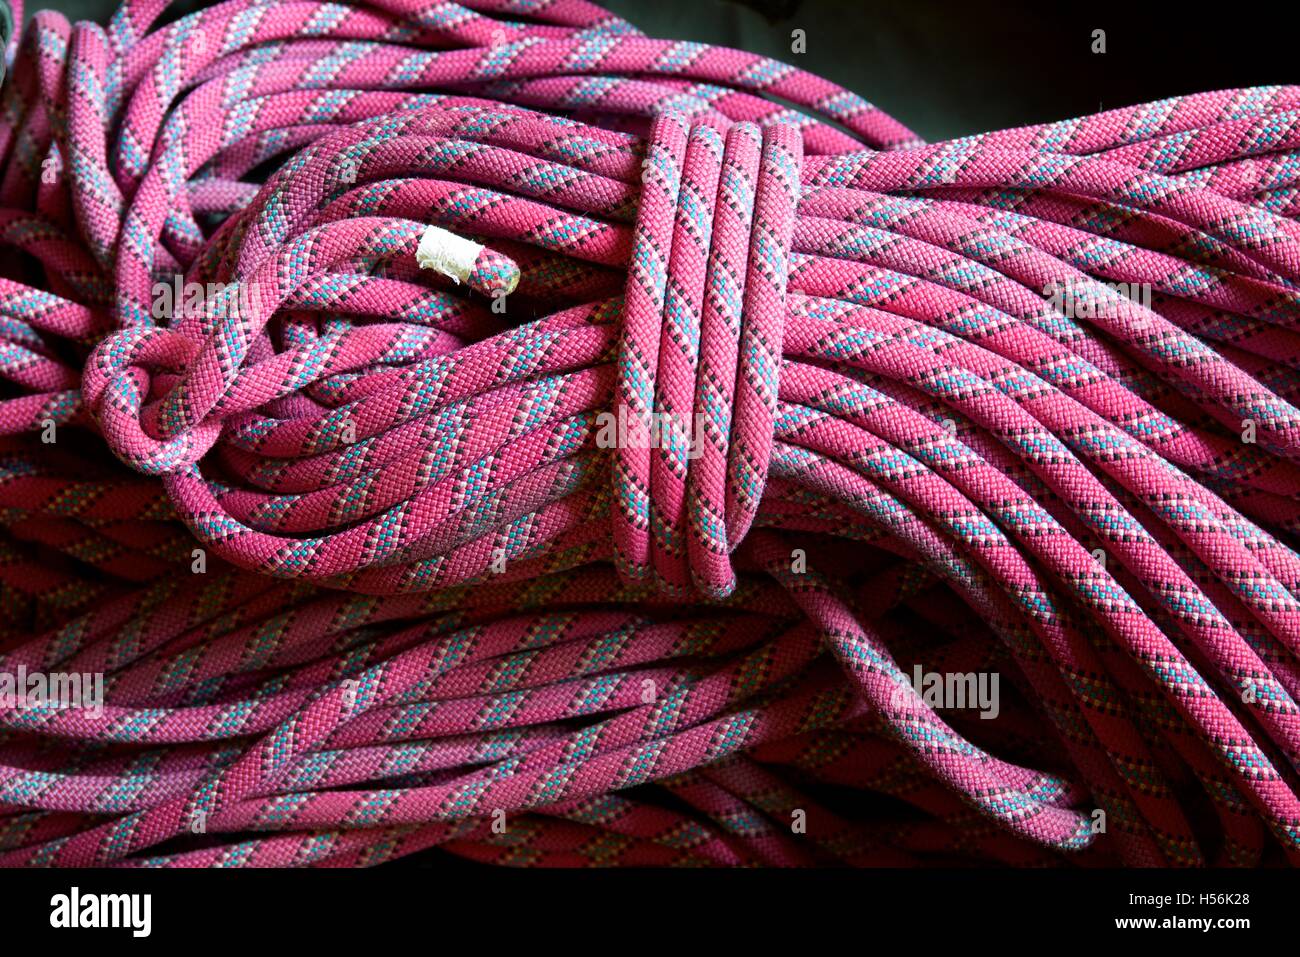 pink climbing rope